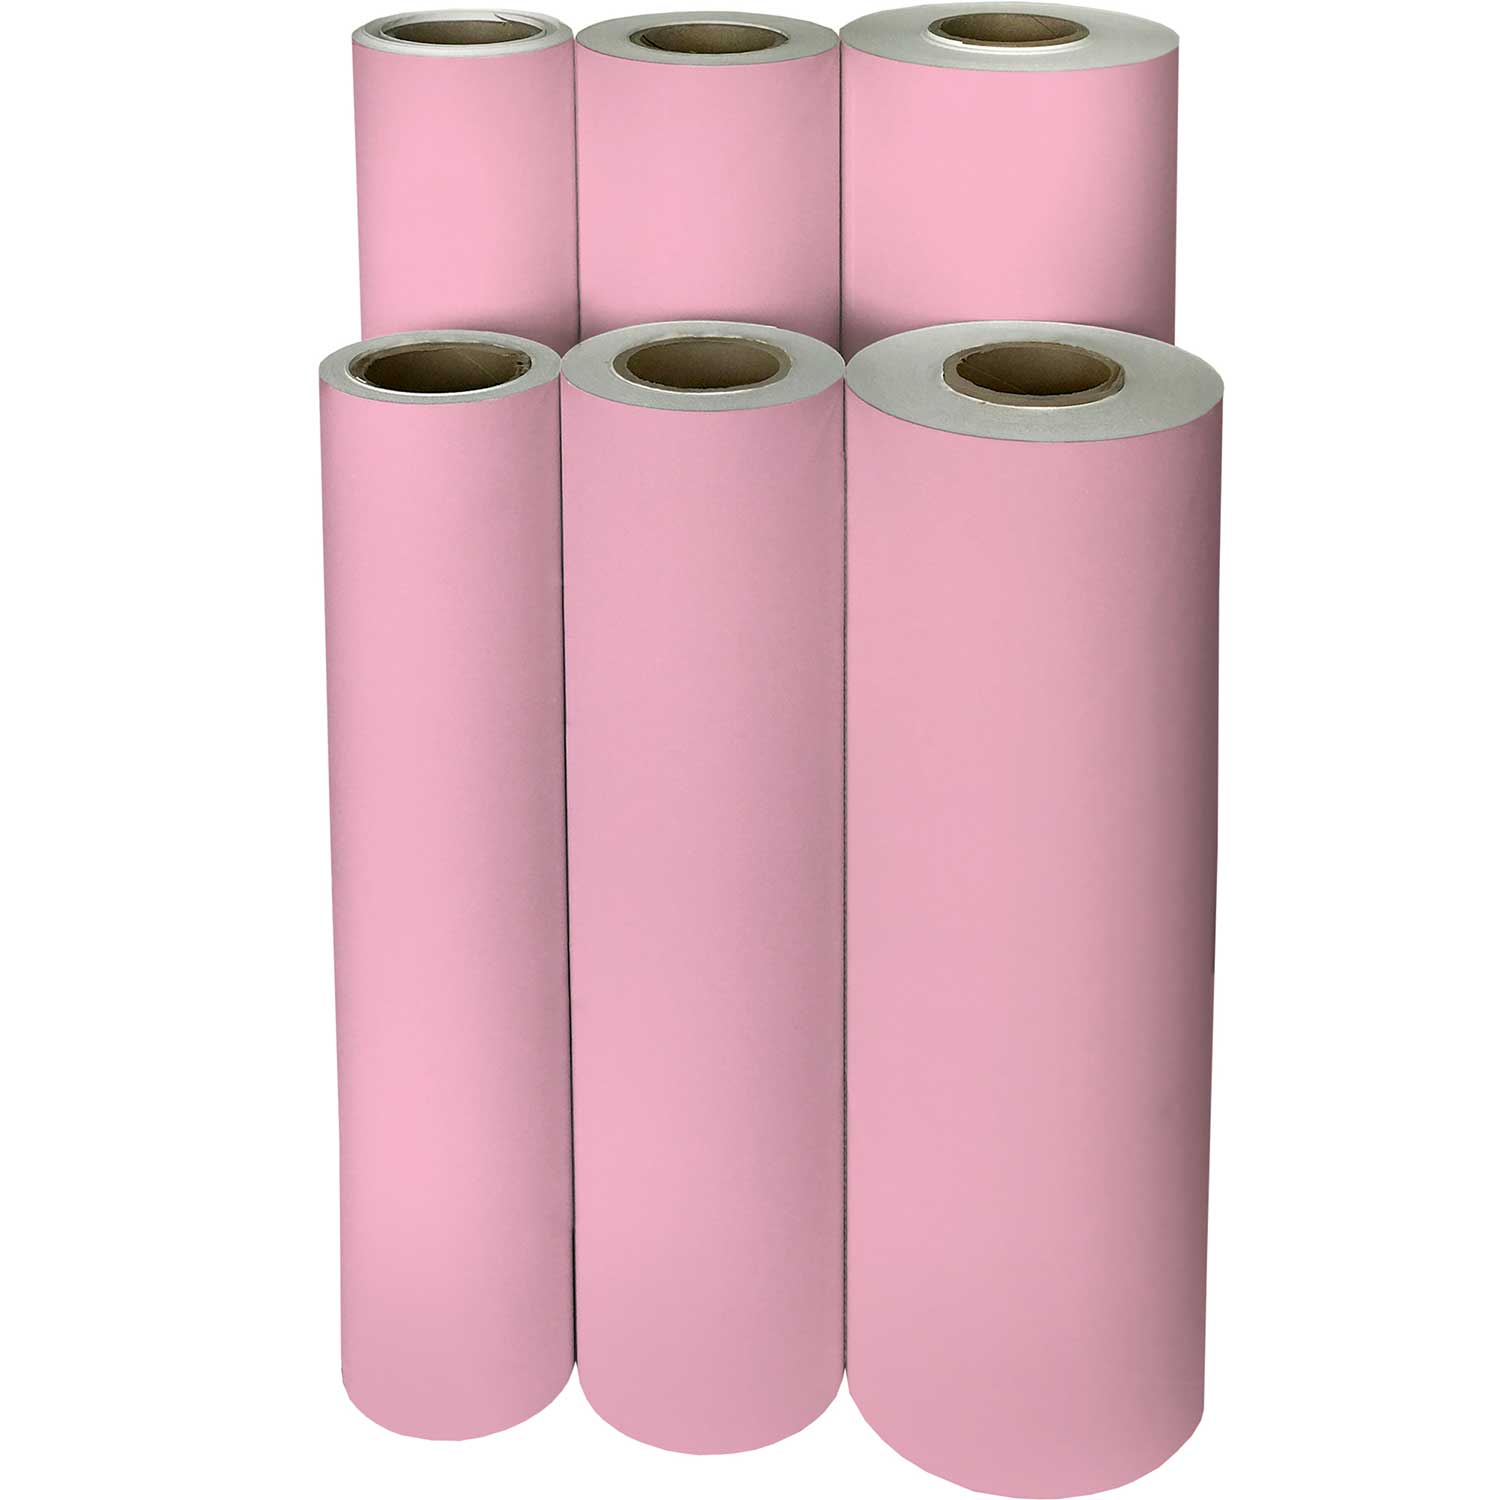 Pastel Pink Gift Wrap